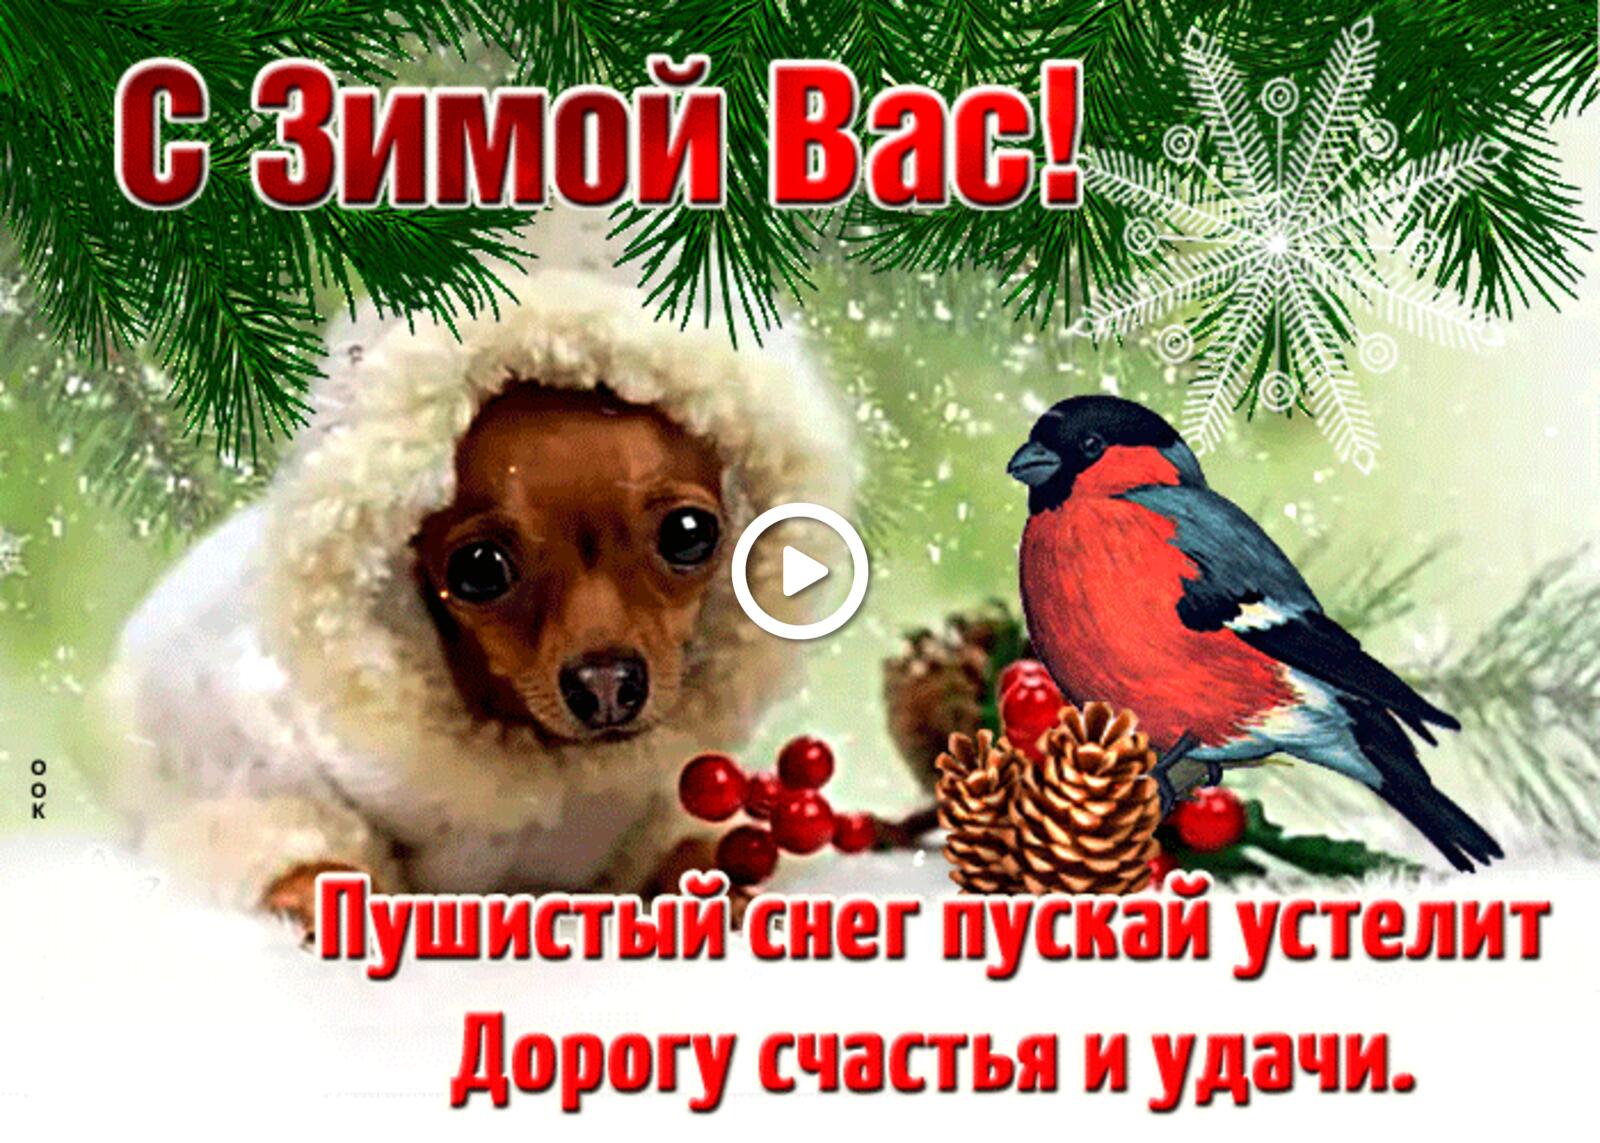 Открытка на тему с зимой вас счастья и удачи собака бесплатно